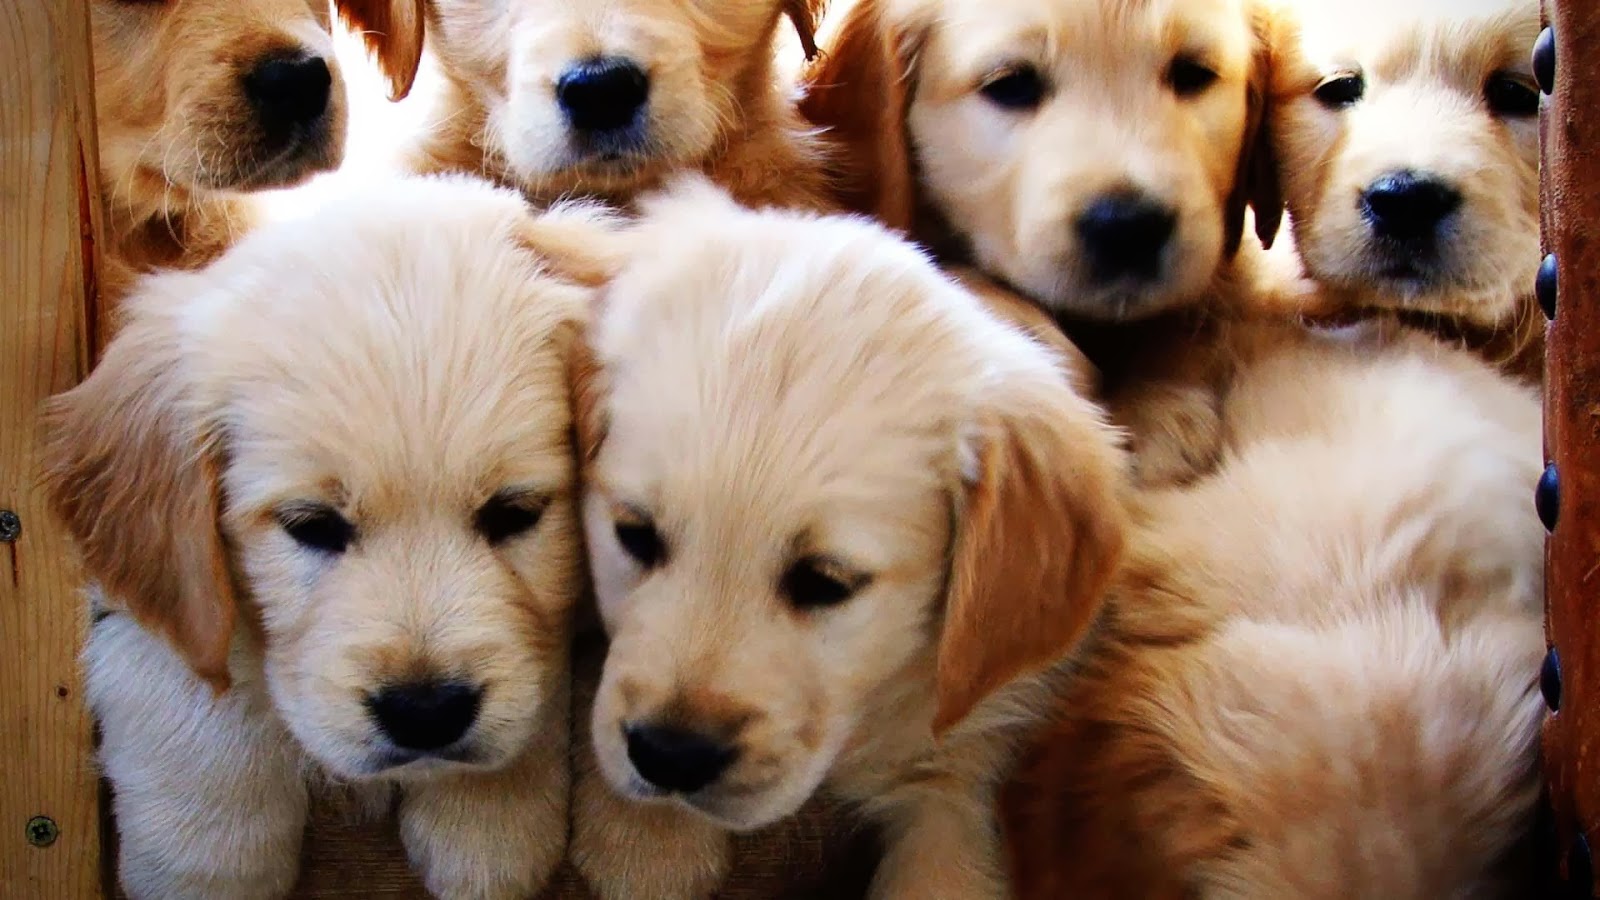 Cute Golden Retriever Puppies Wallpaper Image HD